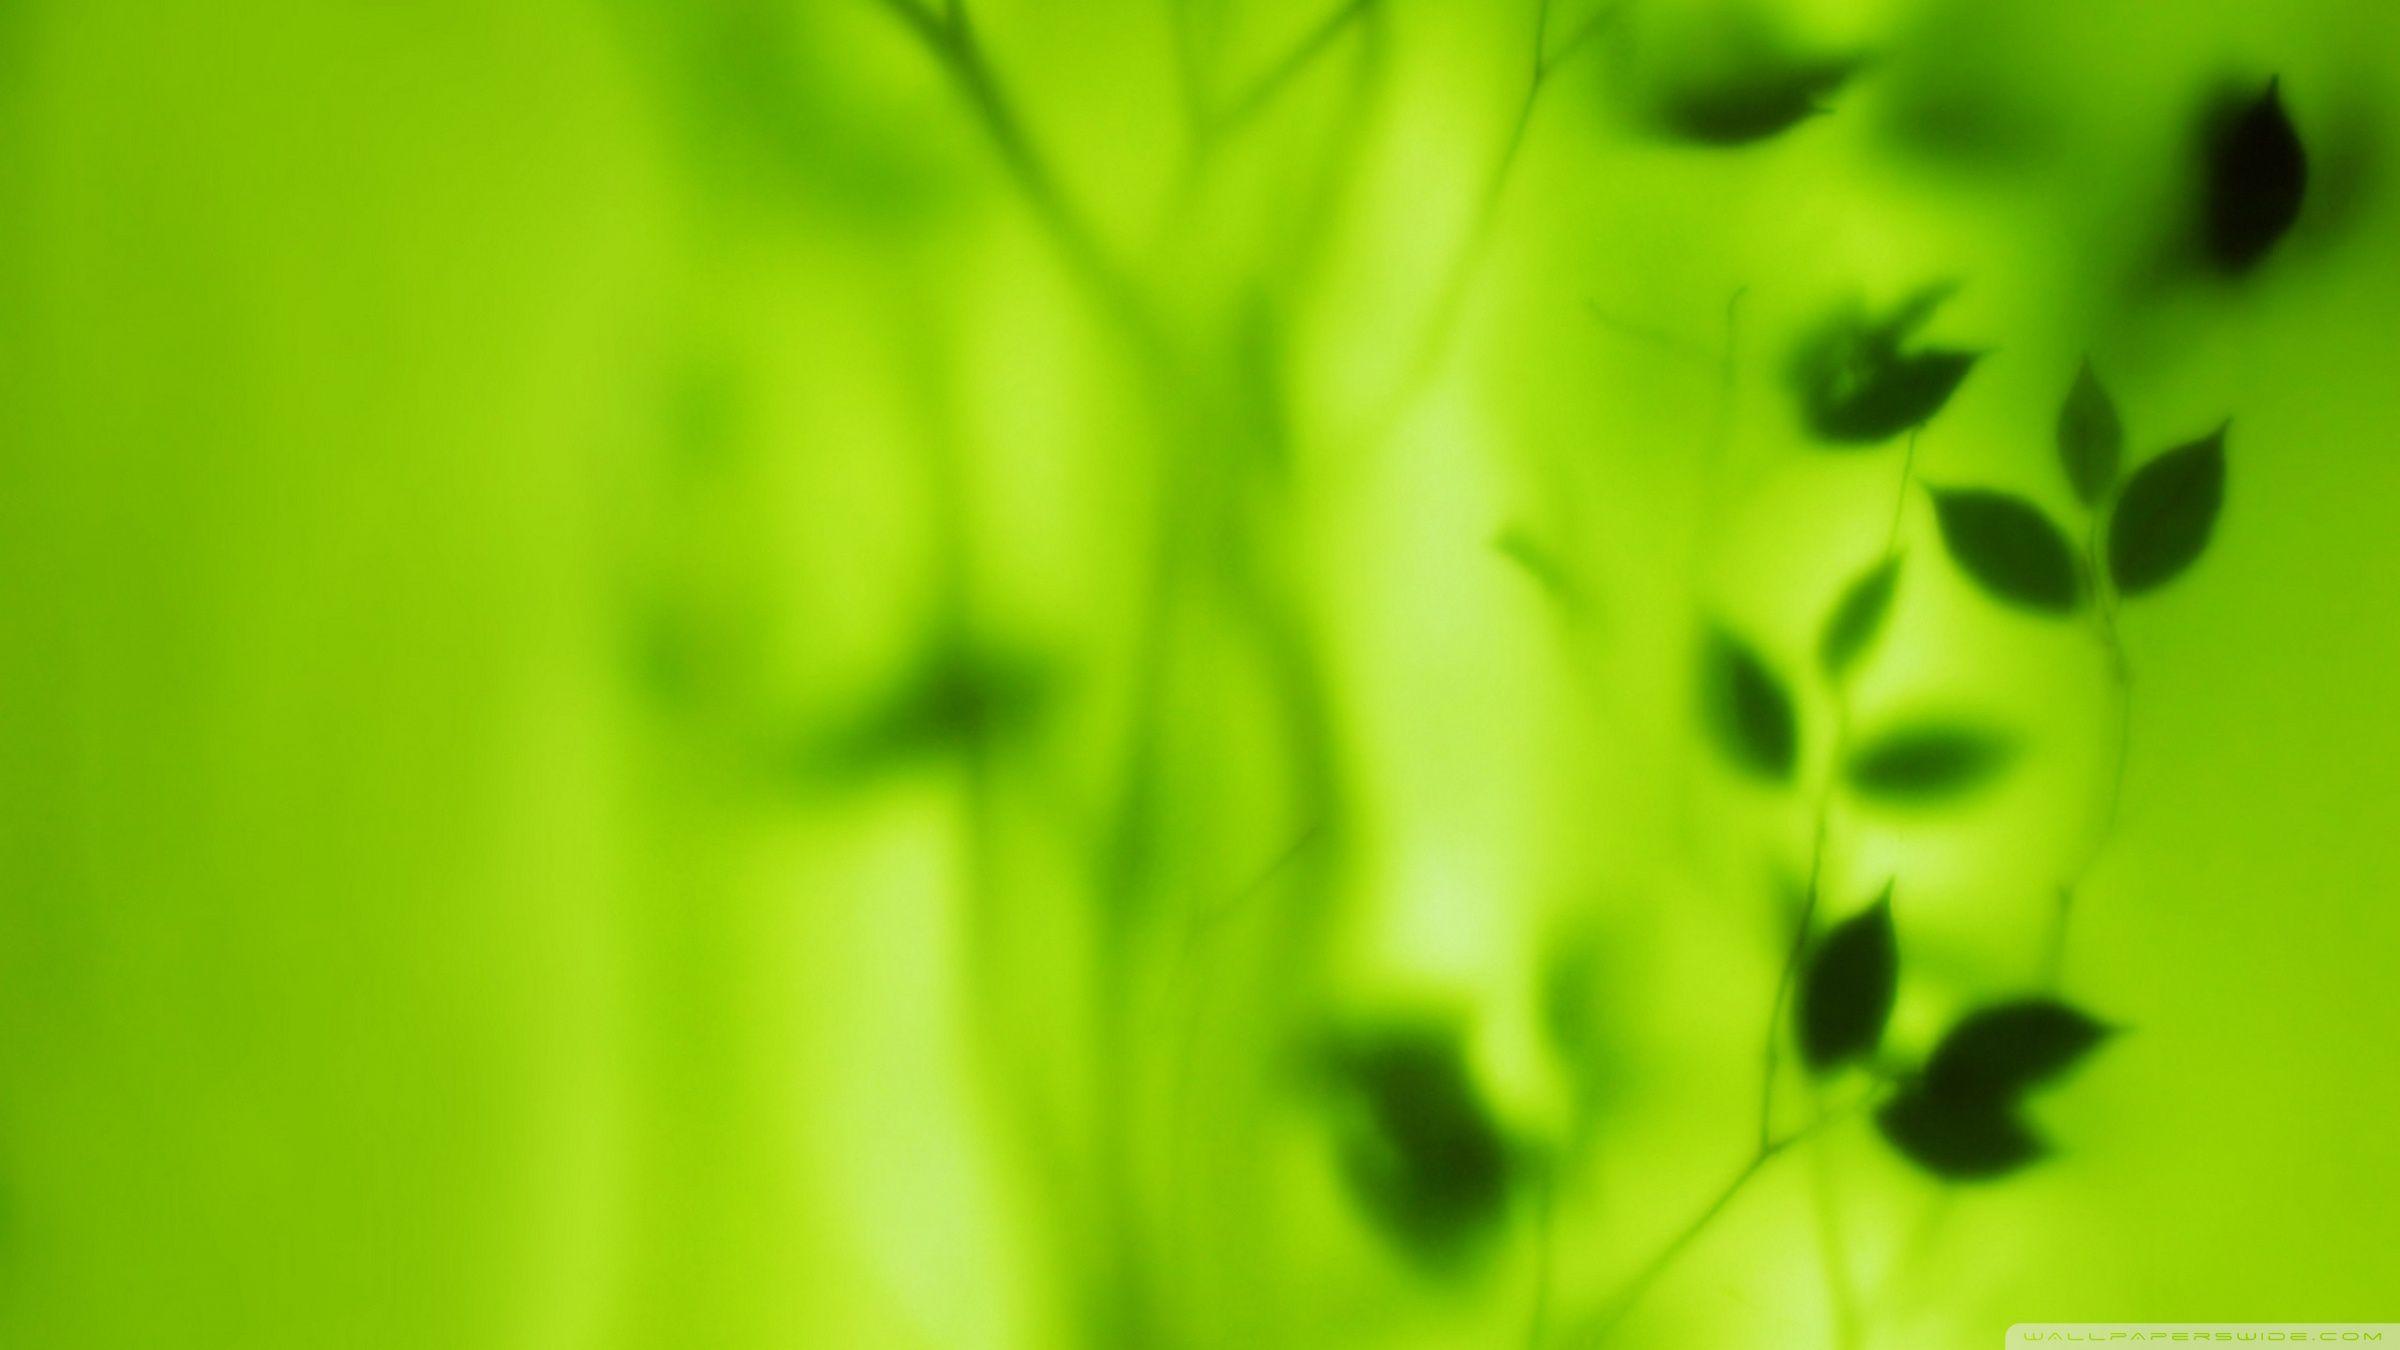 Blurred Green Leaves ❤ 4K HD Desktop Wallpaper for 4K Ultra HD TV